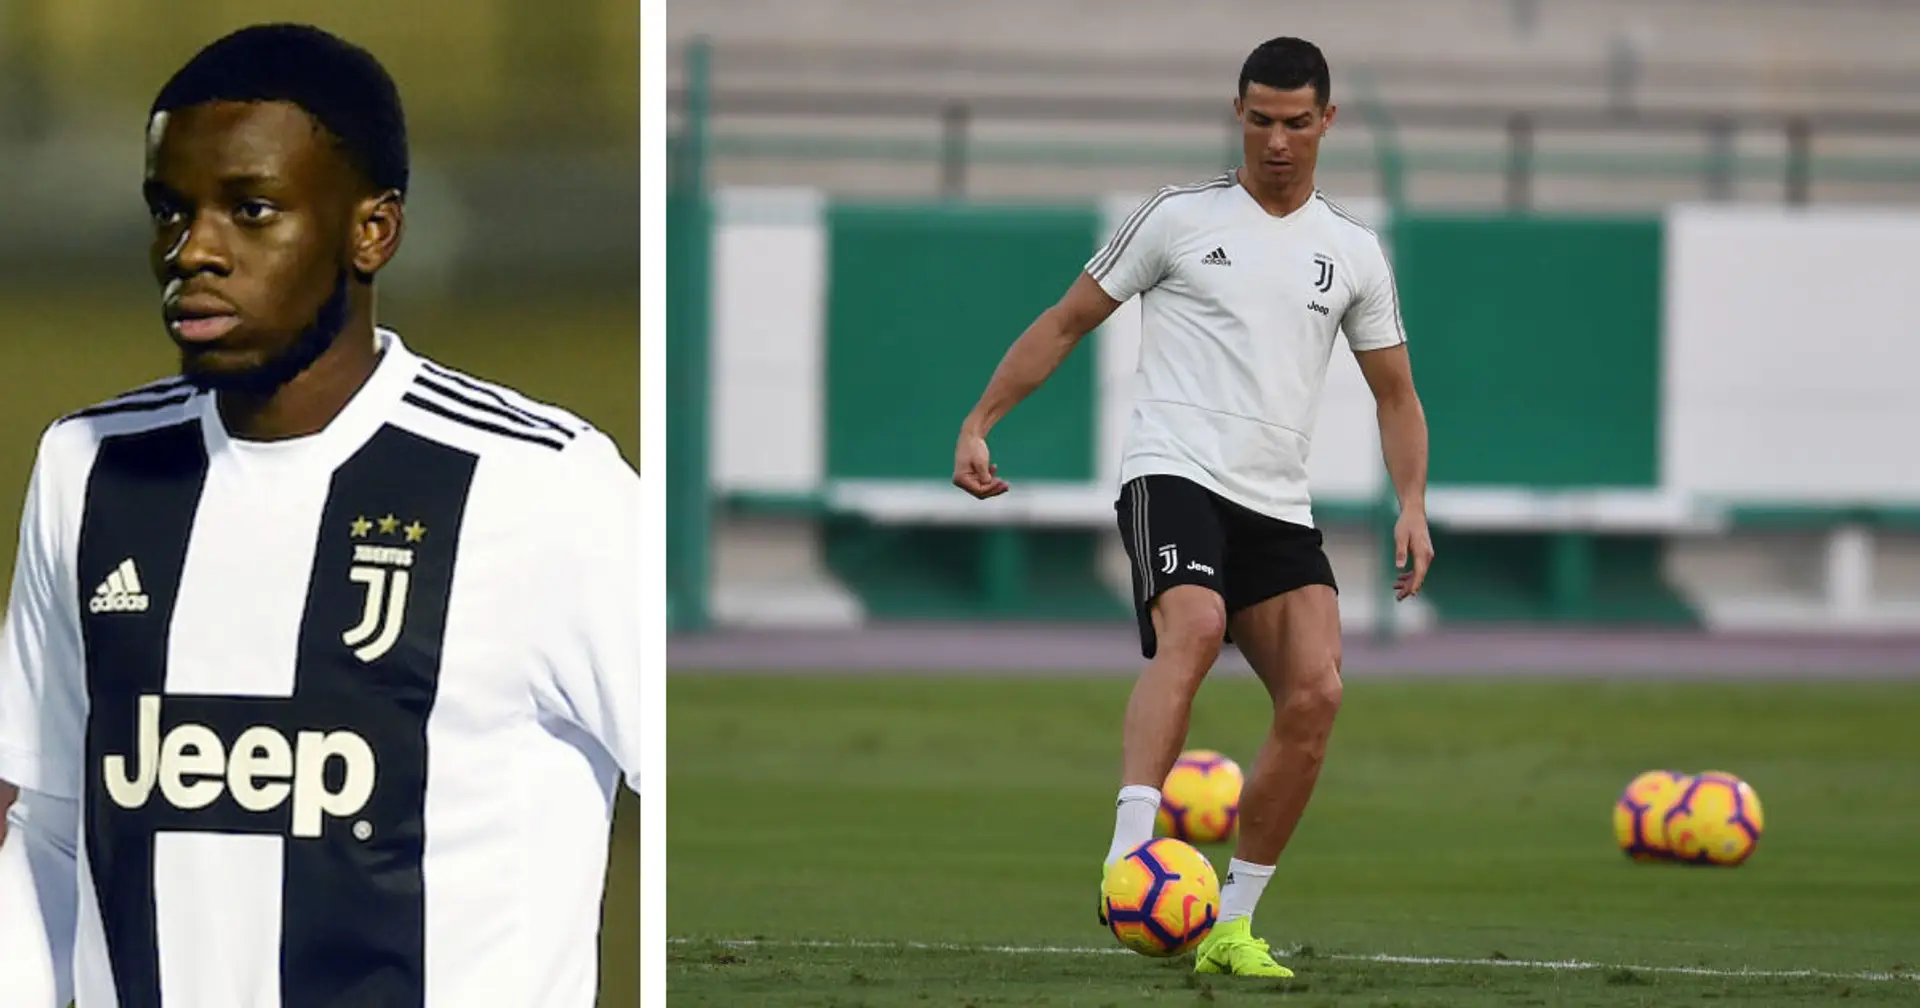 Com'è allenarsi con Cristiano Ronaldo in squadra? L'ex Juve Mavididi: "CR7 arrivava sempre prima degli altri"